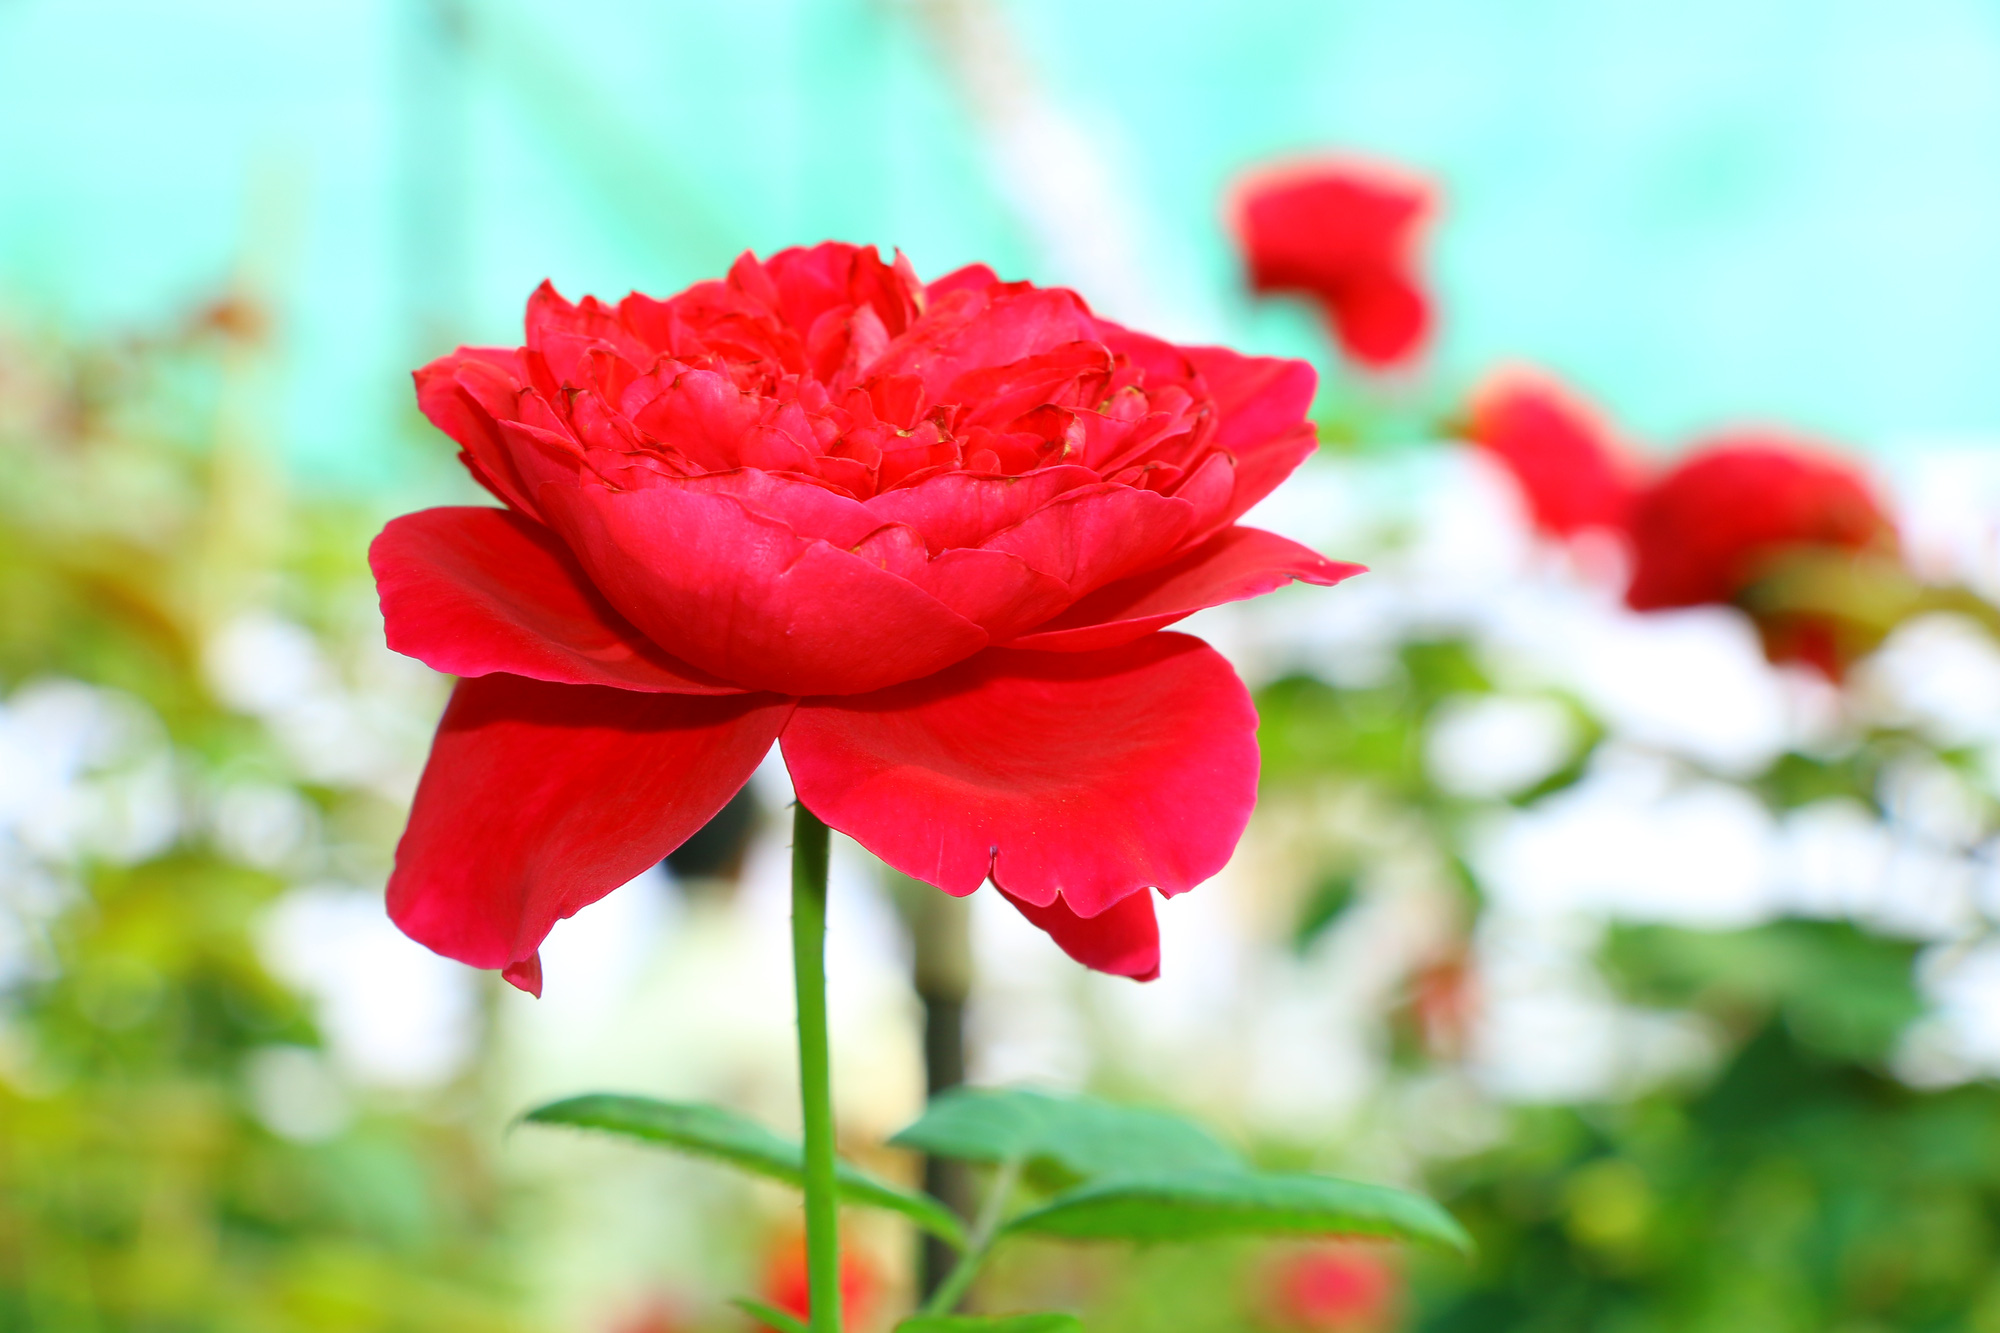 Hãy chiêm ngưỡng vẻ đẹp ngọt ngào và quý phái của hoa hồng Pháp trong hình ảnh. Những cánh hoa mềm mại, màu sắc tinh tế sẽ khiến bạn yêu mãi tình đẹp của hoa.